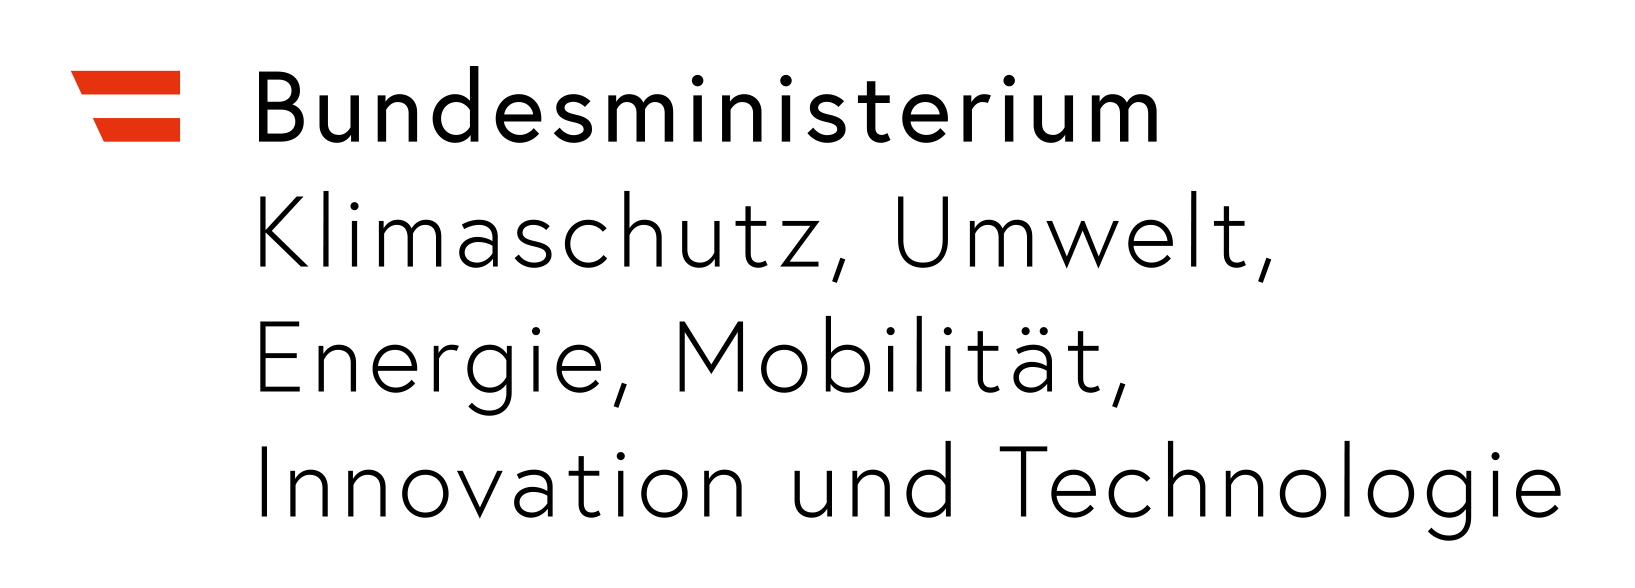 Bundesministerium für Klimaschutz Logo